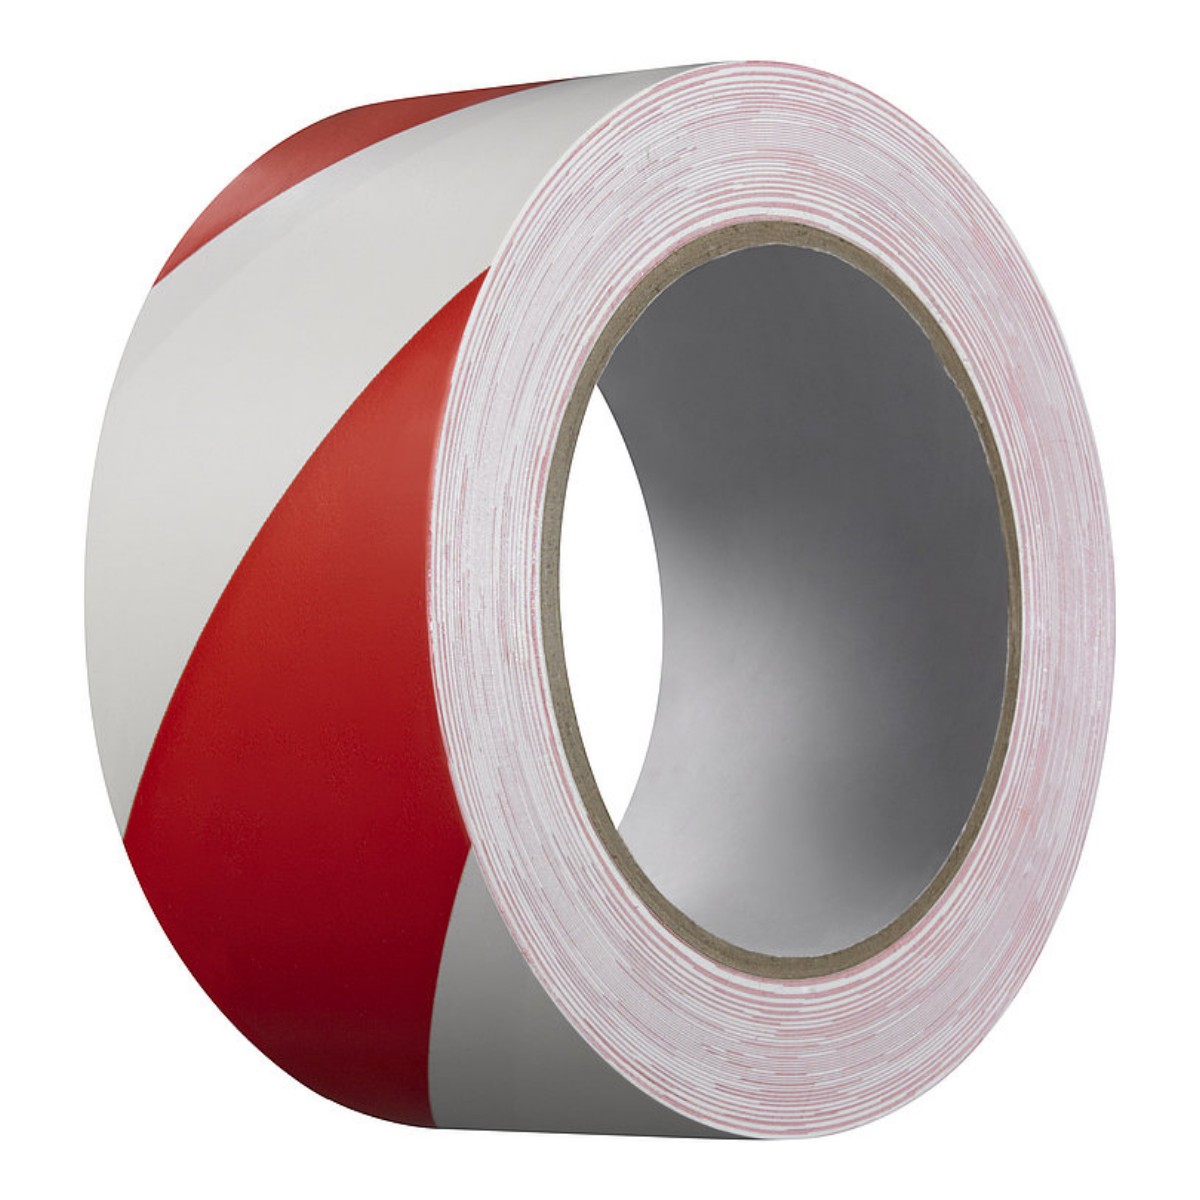 PVC-Warnband, rot/weiß, 50 mm breit, 30 lfdm.